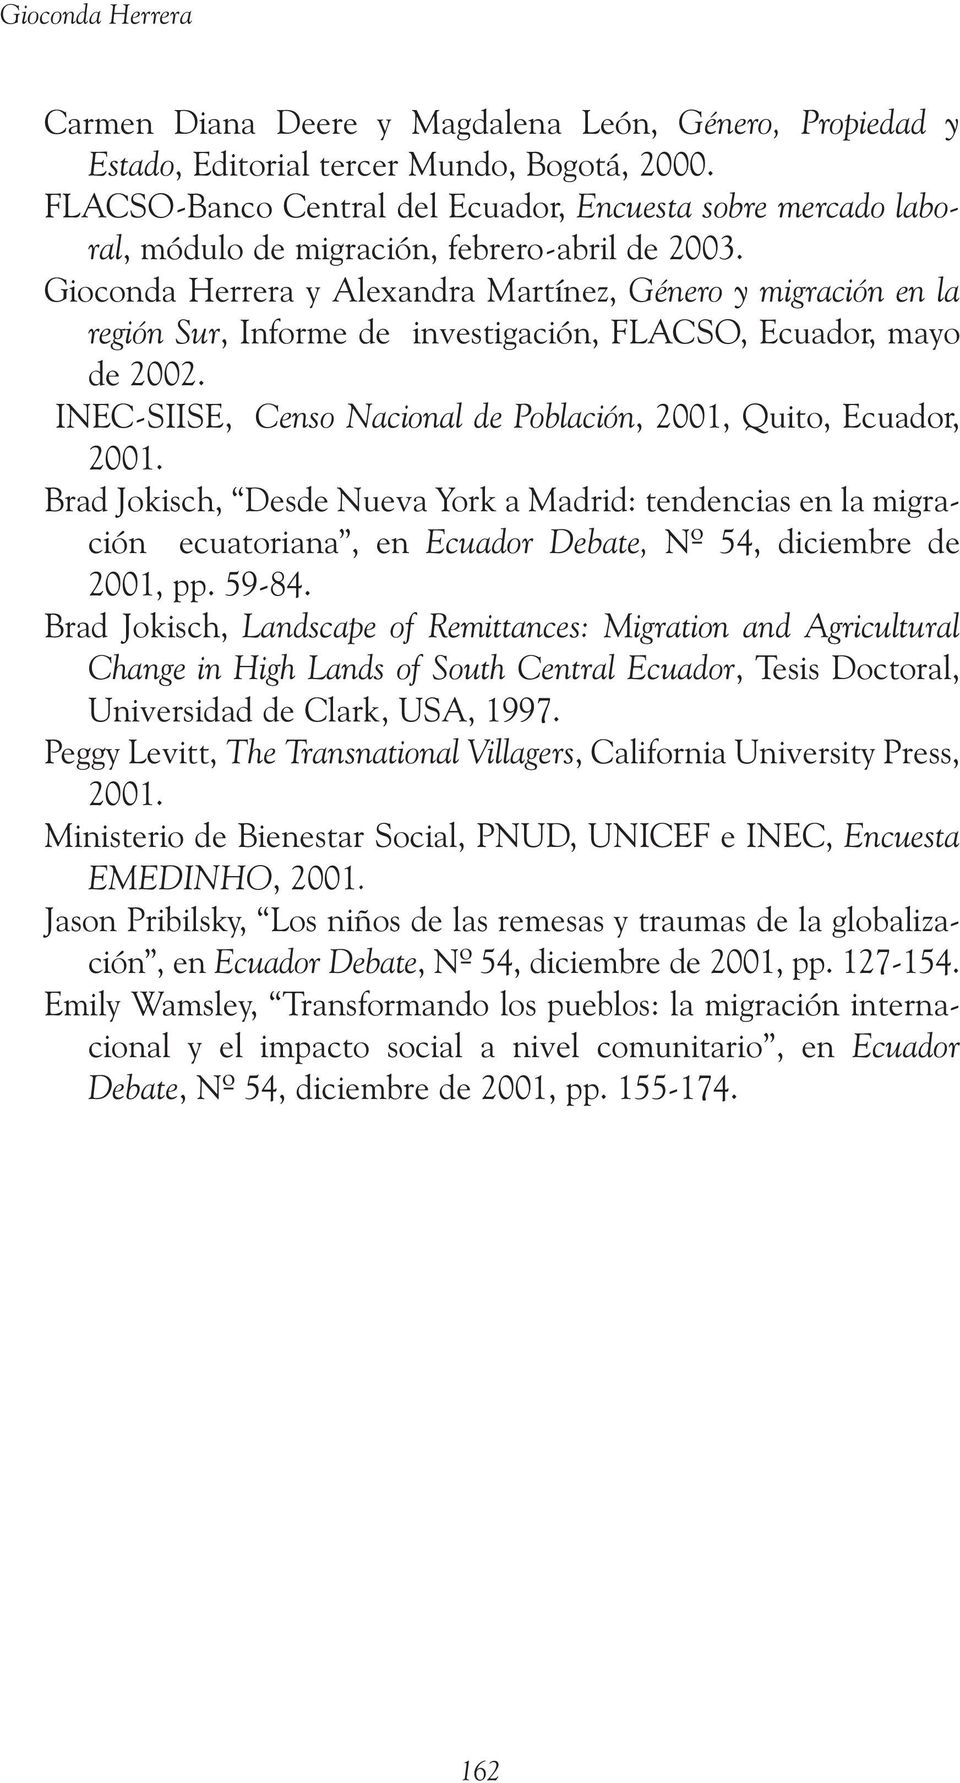 Gioconda Herrera y Alexandra Martínez, Género y migración en la región Sur, Informe de investigación, FLACSO, Ecuador, mayo de 2002.